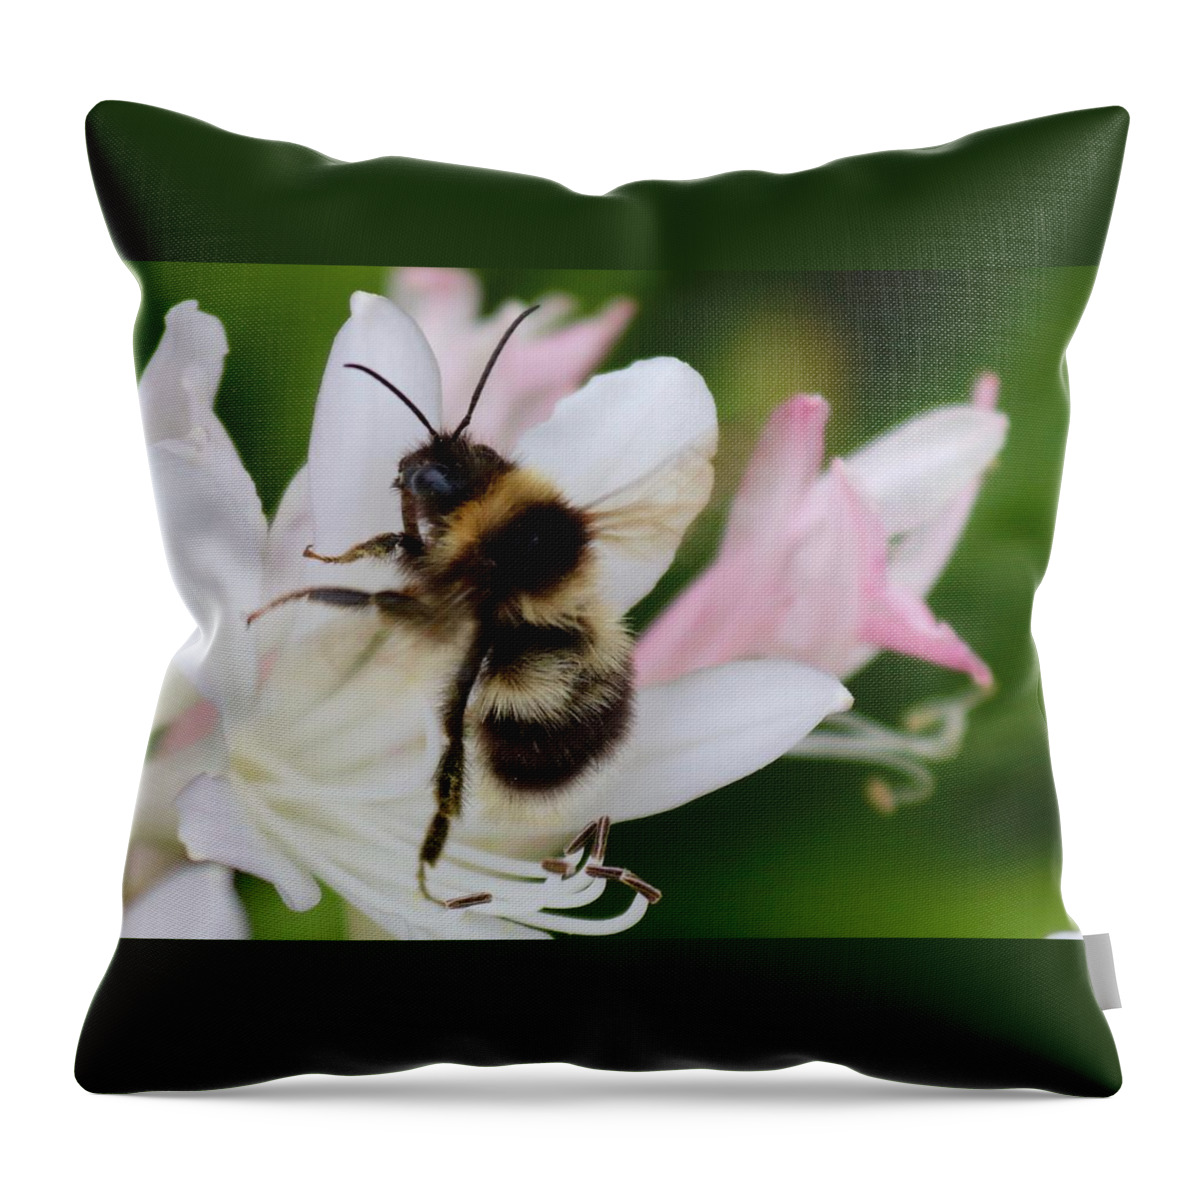 Bombu Throw Pillow featuring the photograph Bombus terrestris-Bumblebee by Sarah Lilja